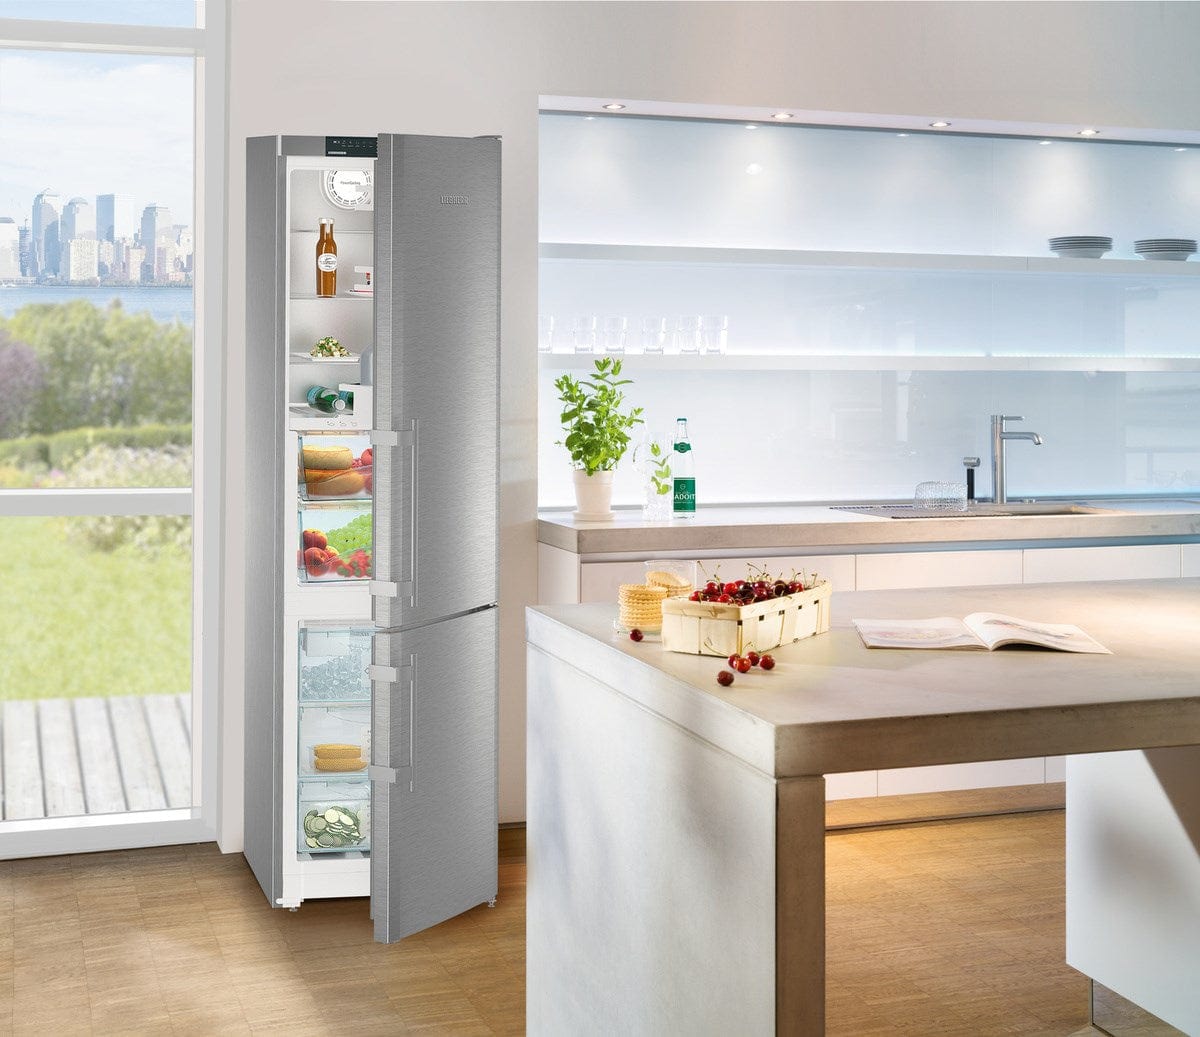 Liebherr 24" Freestanding Smart Steel Double Door Fridge-Freezer CBS 1360 Refrigerators CBS 1360 Luxury Appliances Direct